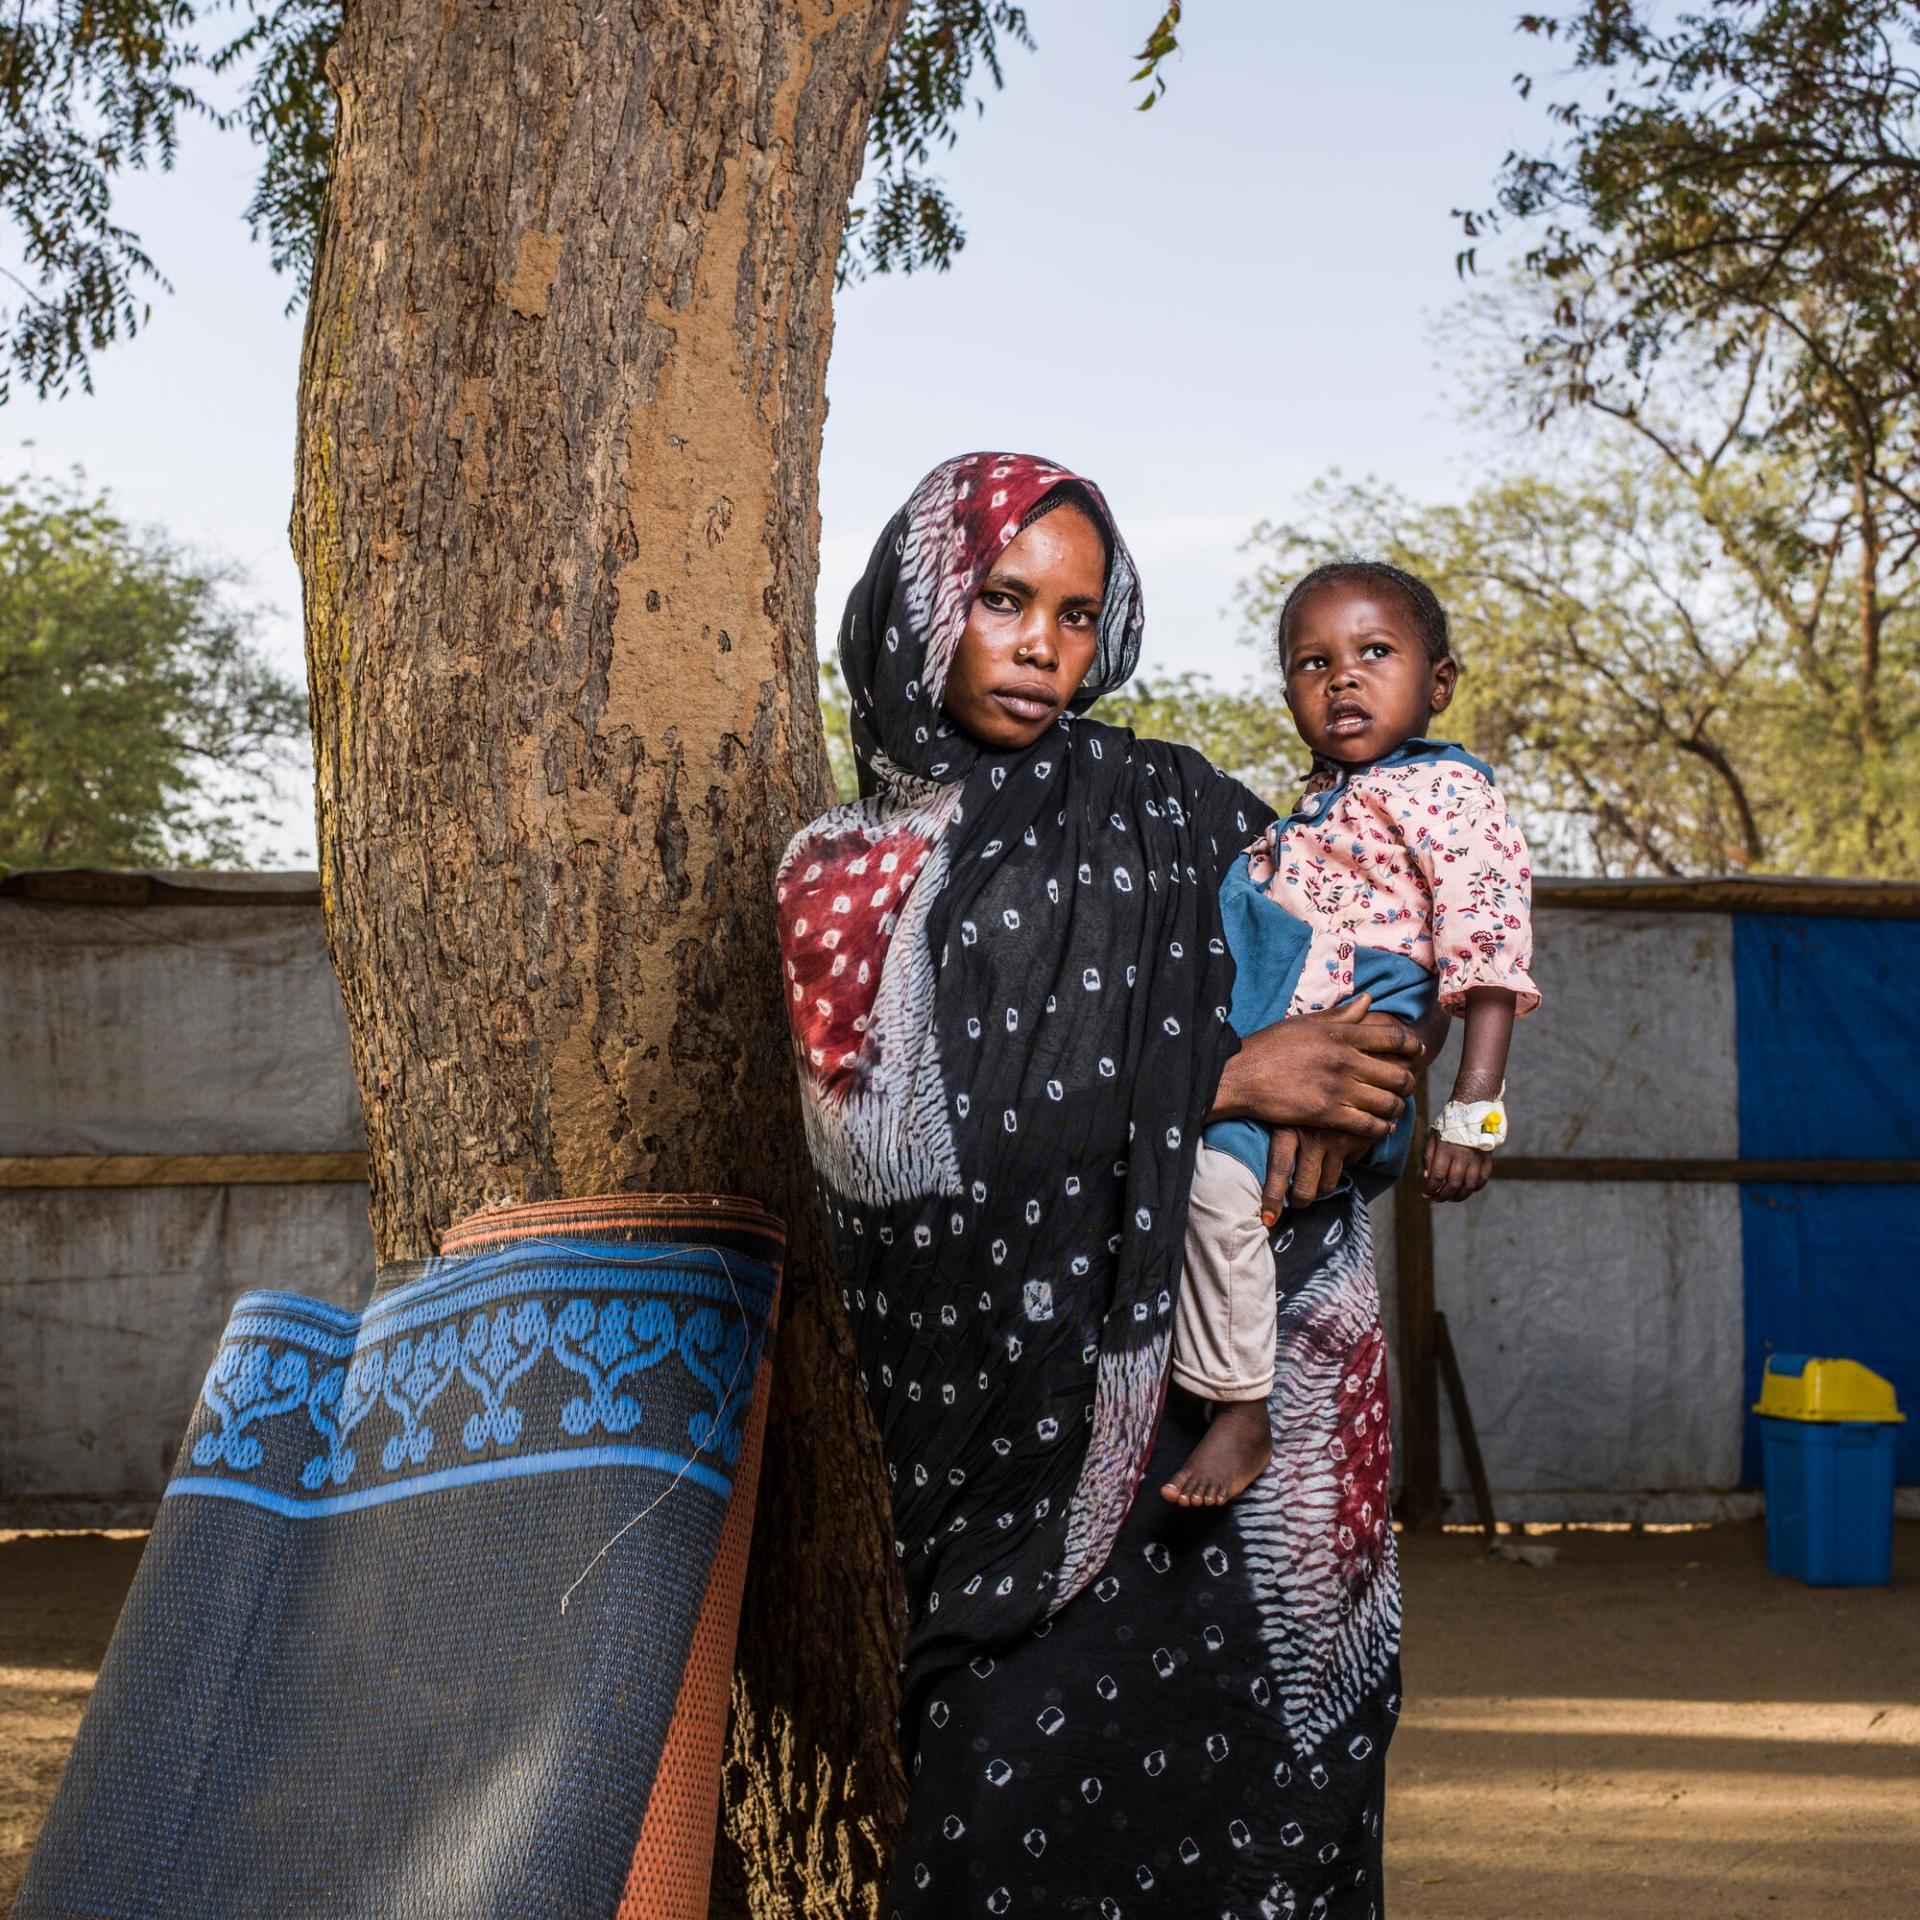 « Il n’y a aucune possibilité de retourner au Soudan cette fois »